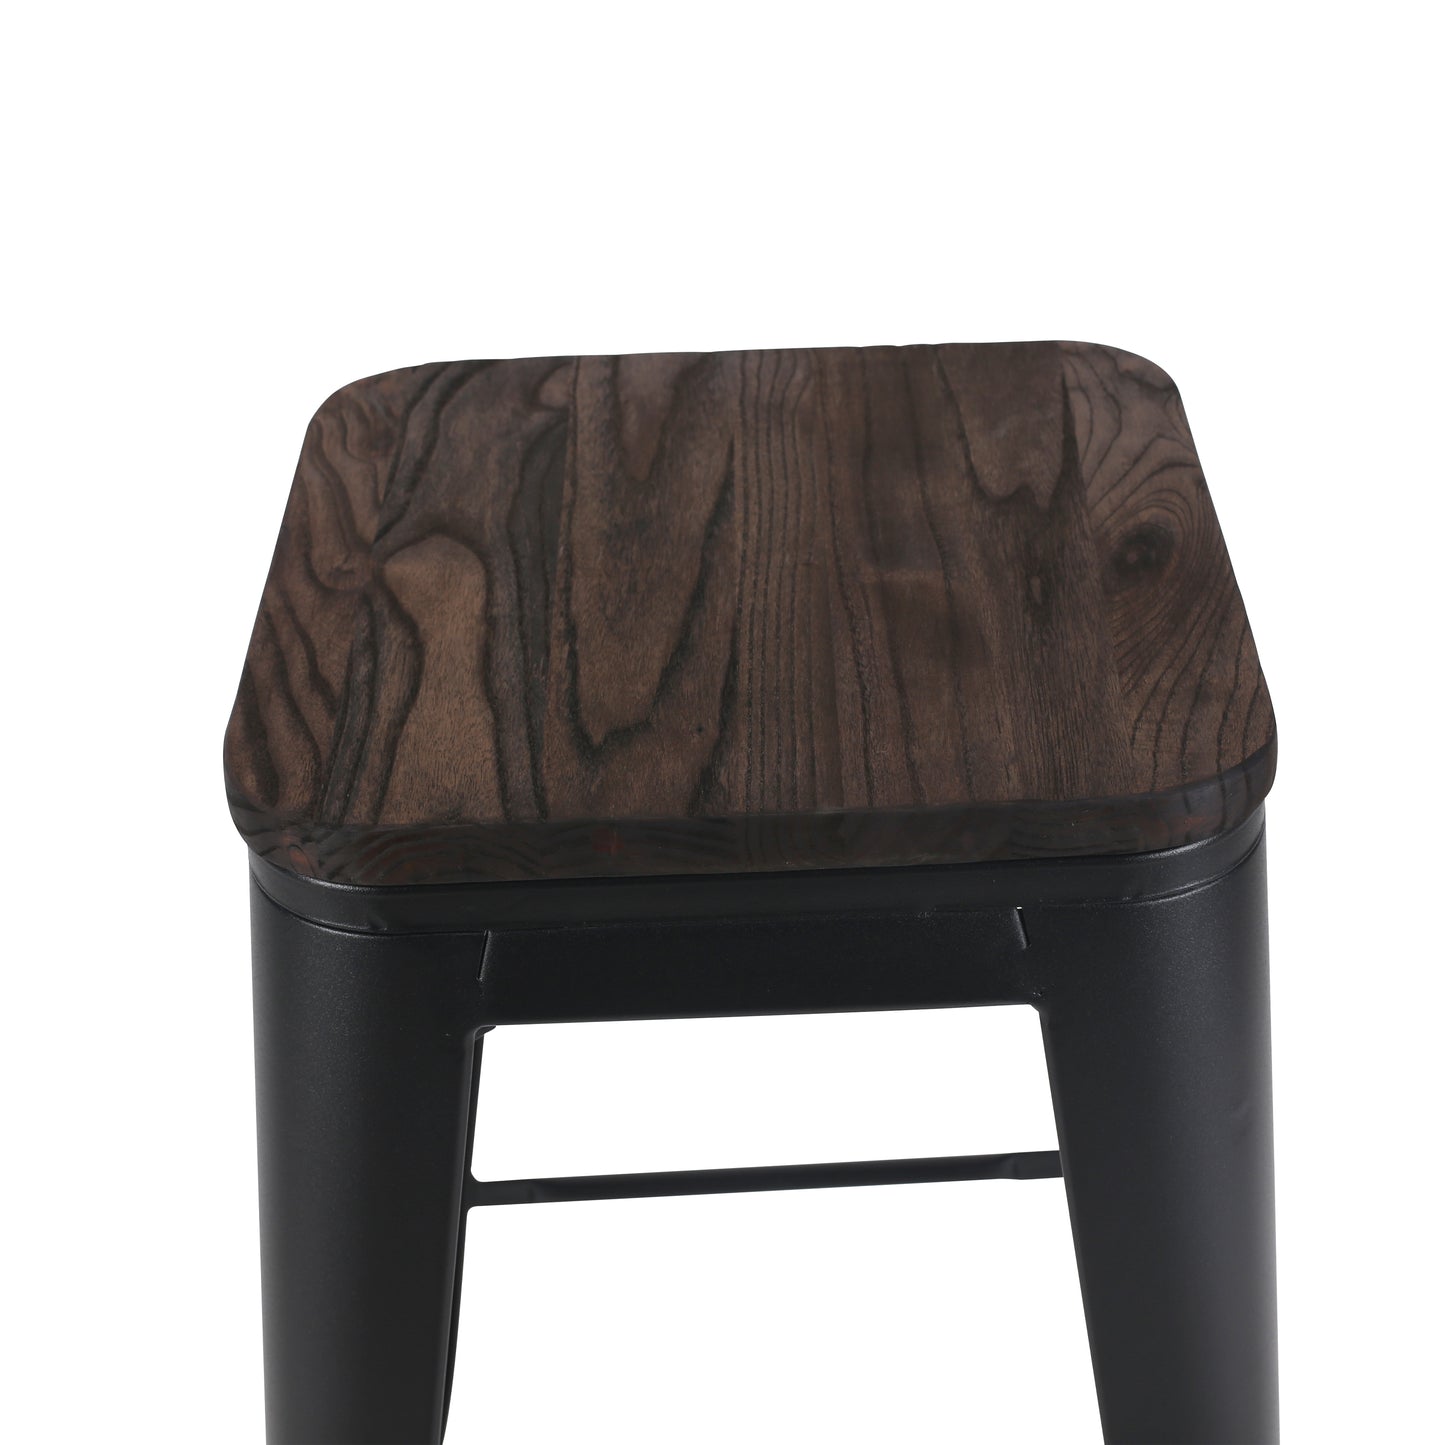 Tabouret de bar en métal noir mat style industriel et assise en bois foncé - Hauteur 66 cm